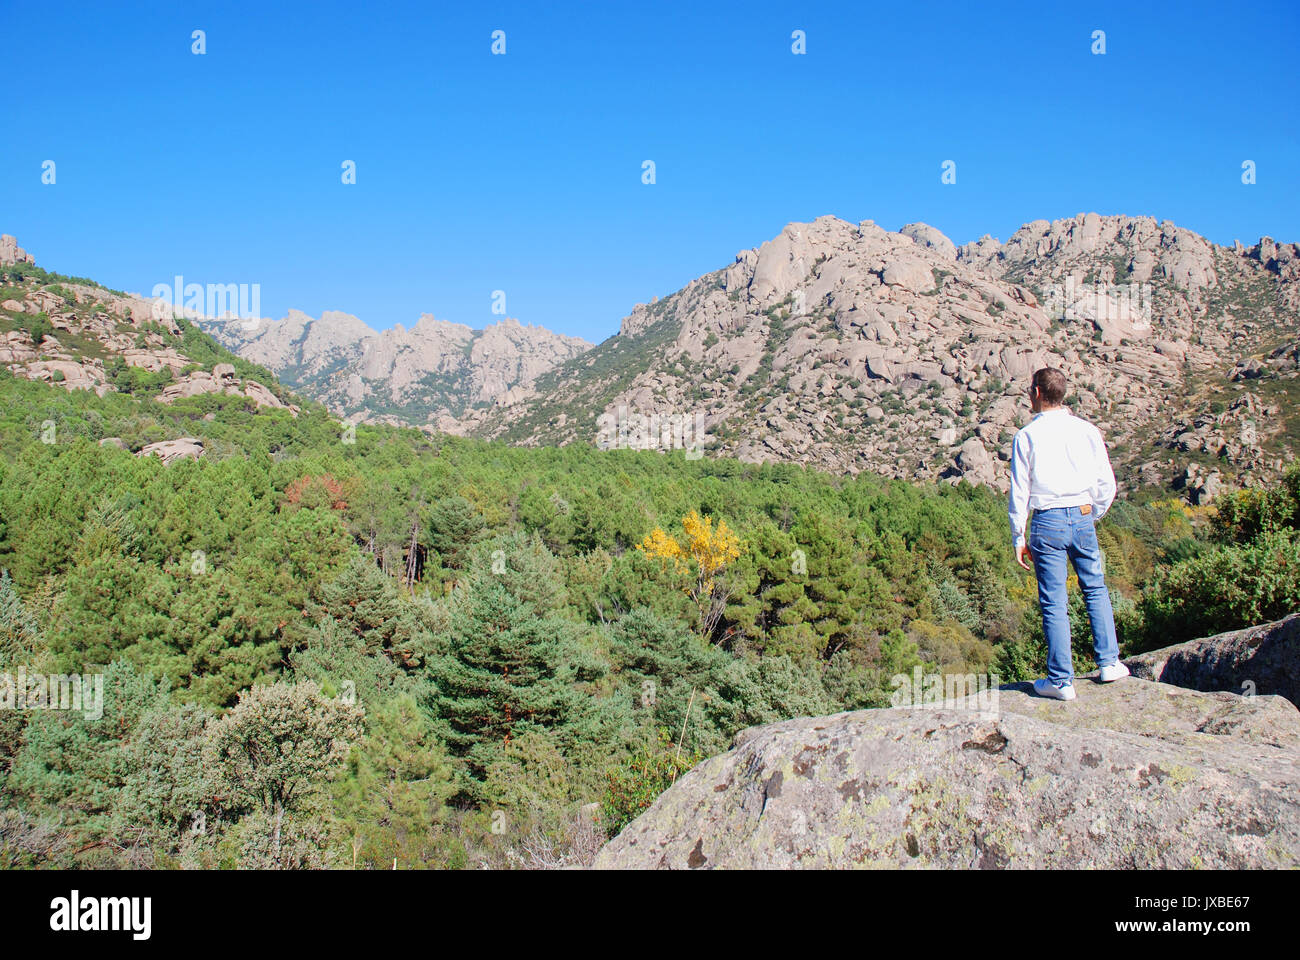 Man standing on a stone, watching the landscape. Parque Regional de la Pedriza de Manzanares, Manzanares El Real, Madrid province, Spain. Stock Photo